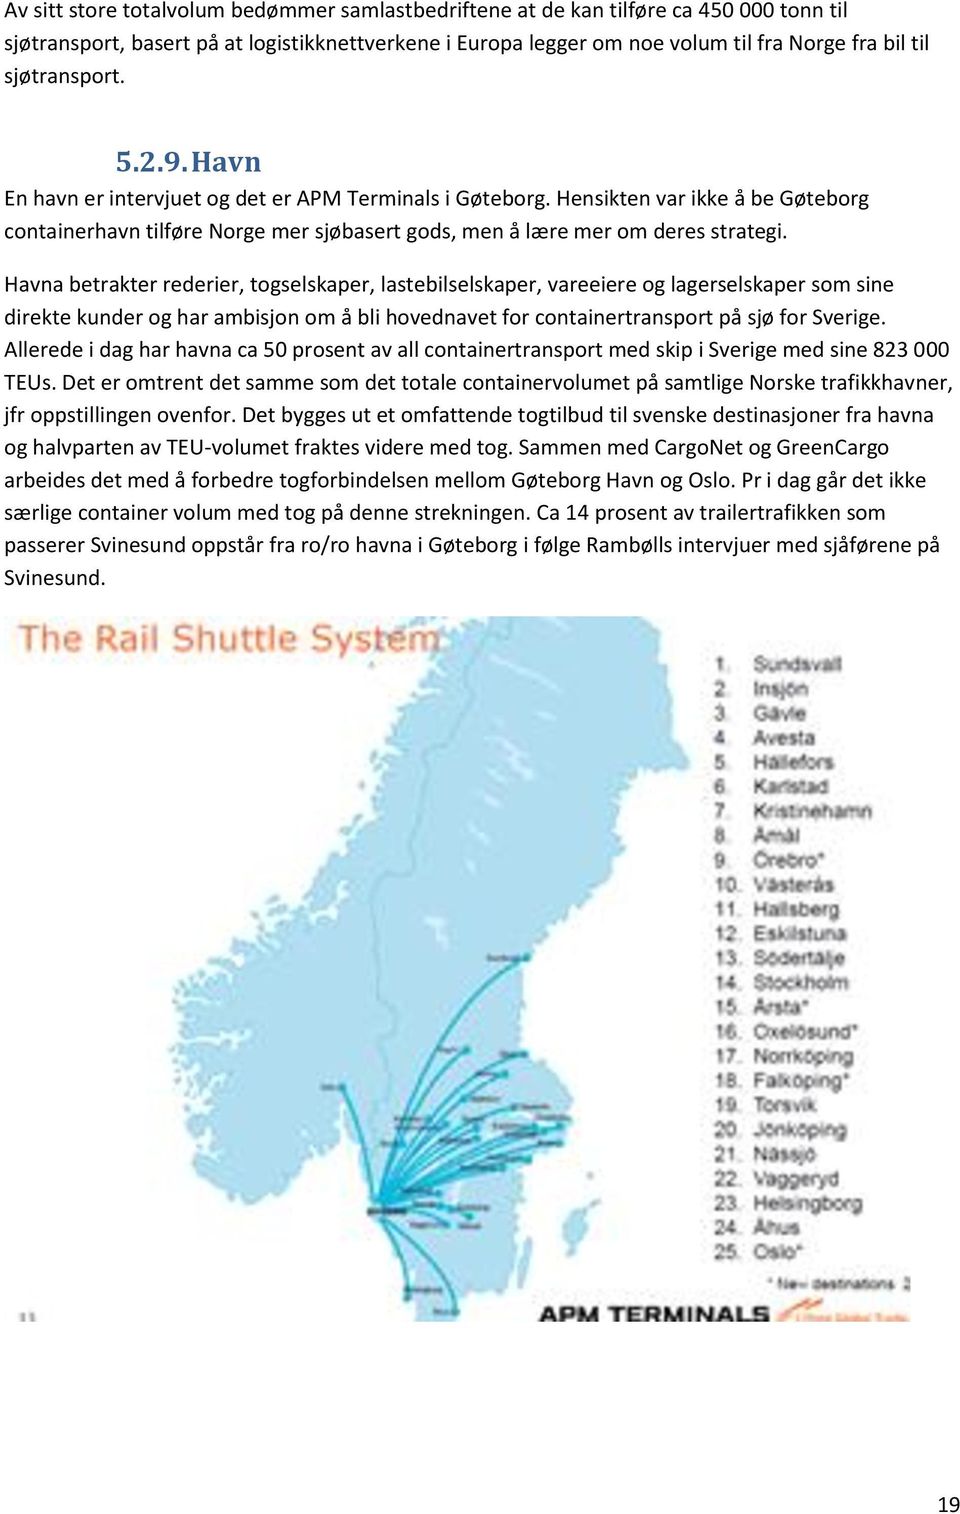 Havna betrakter rederier, togselskaper, lastebilselskaper, vareeiere og lagerselskaper som sine direkte kunder og har ambisjon om å bli hovednavet for containertransport på sjø for Sverige.